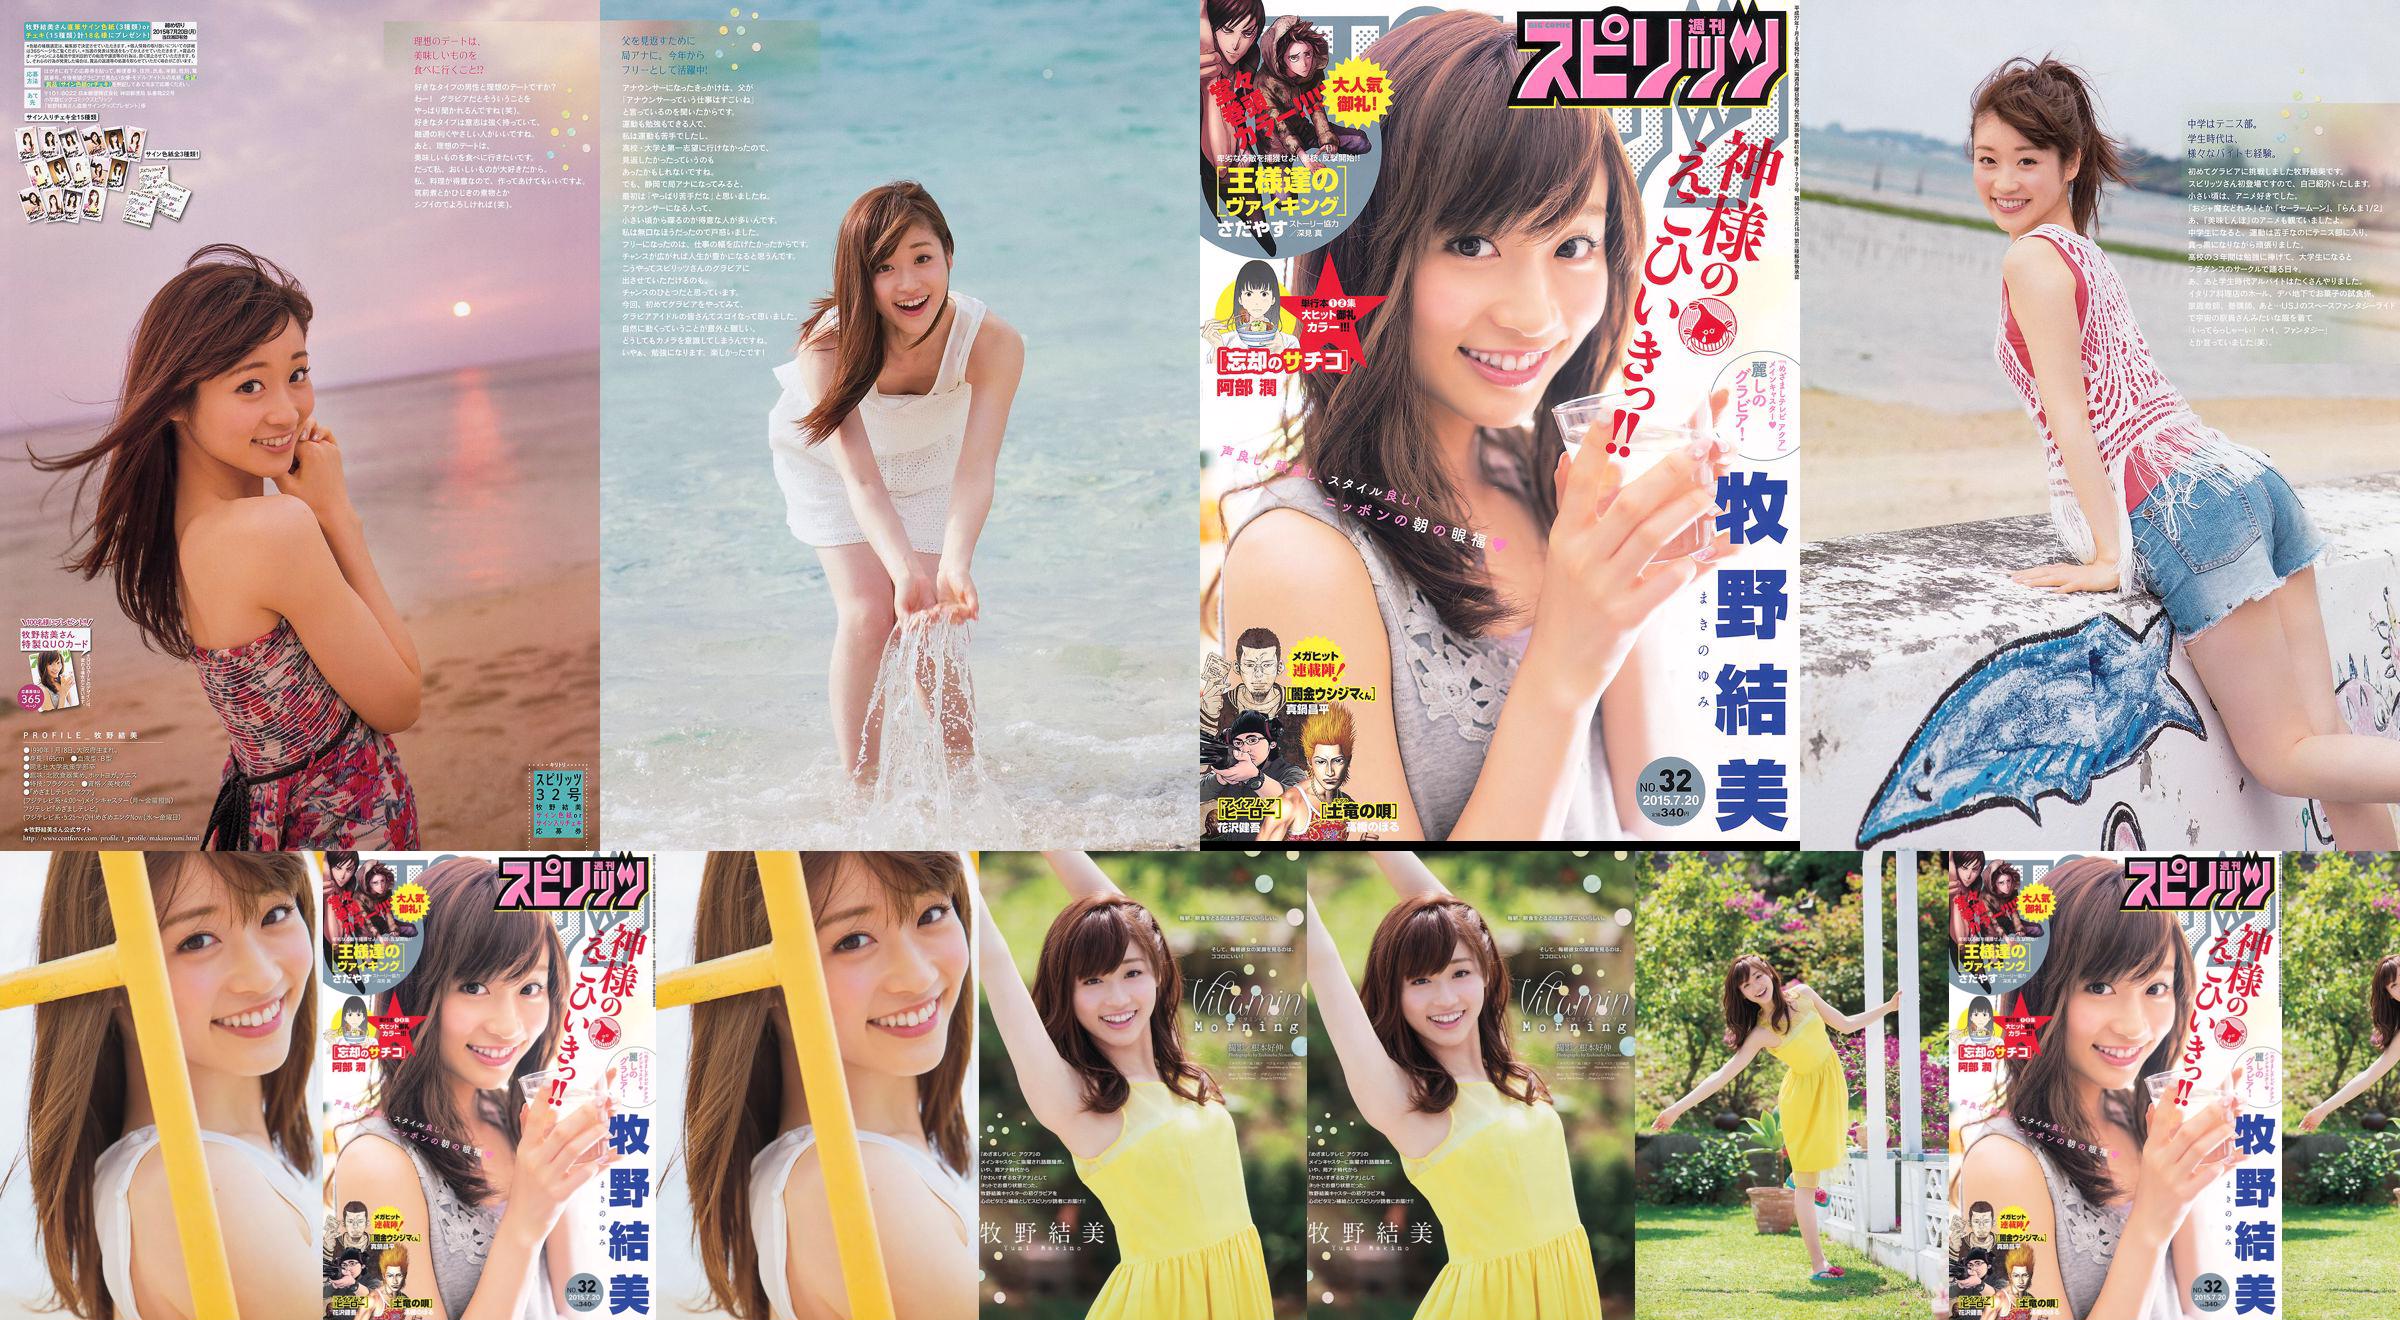 [Weekly Big Comic Spirits] Yumi Makino 2015 No.32 Photo Magazine No.cc81ce Page 2